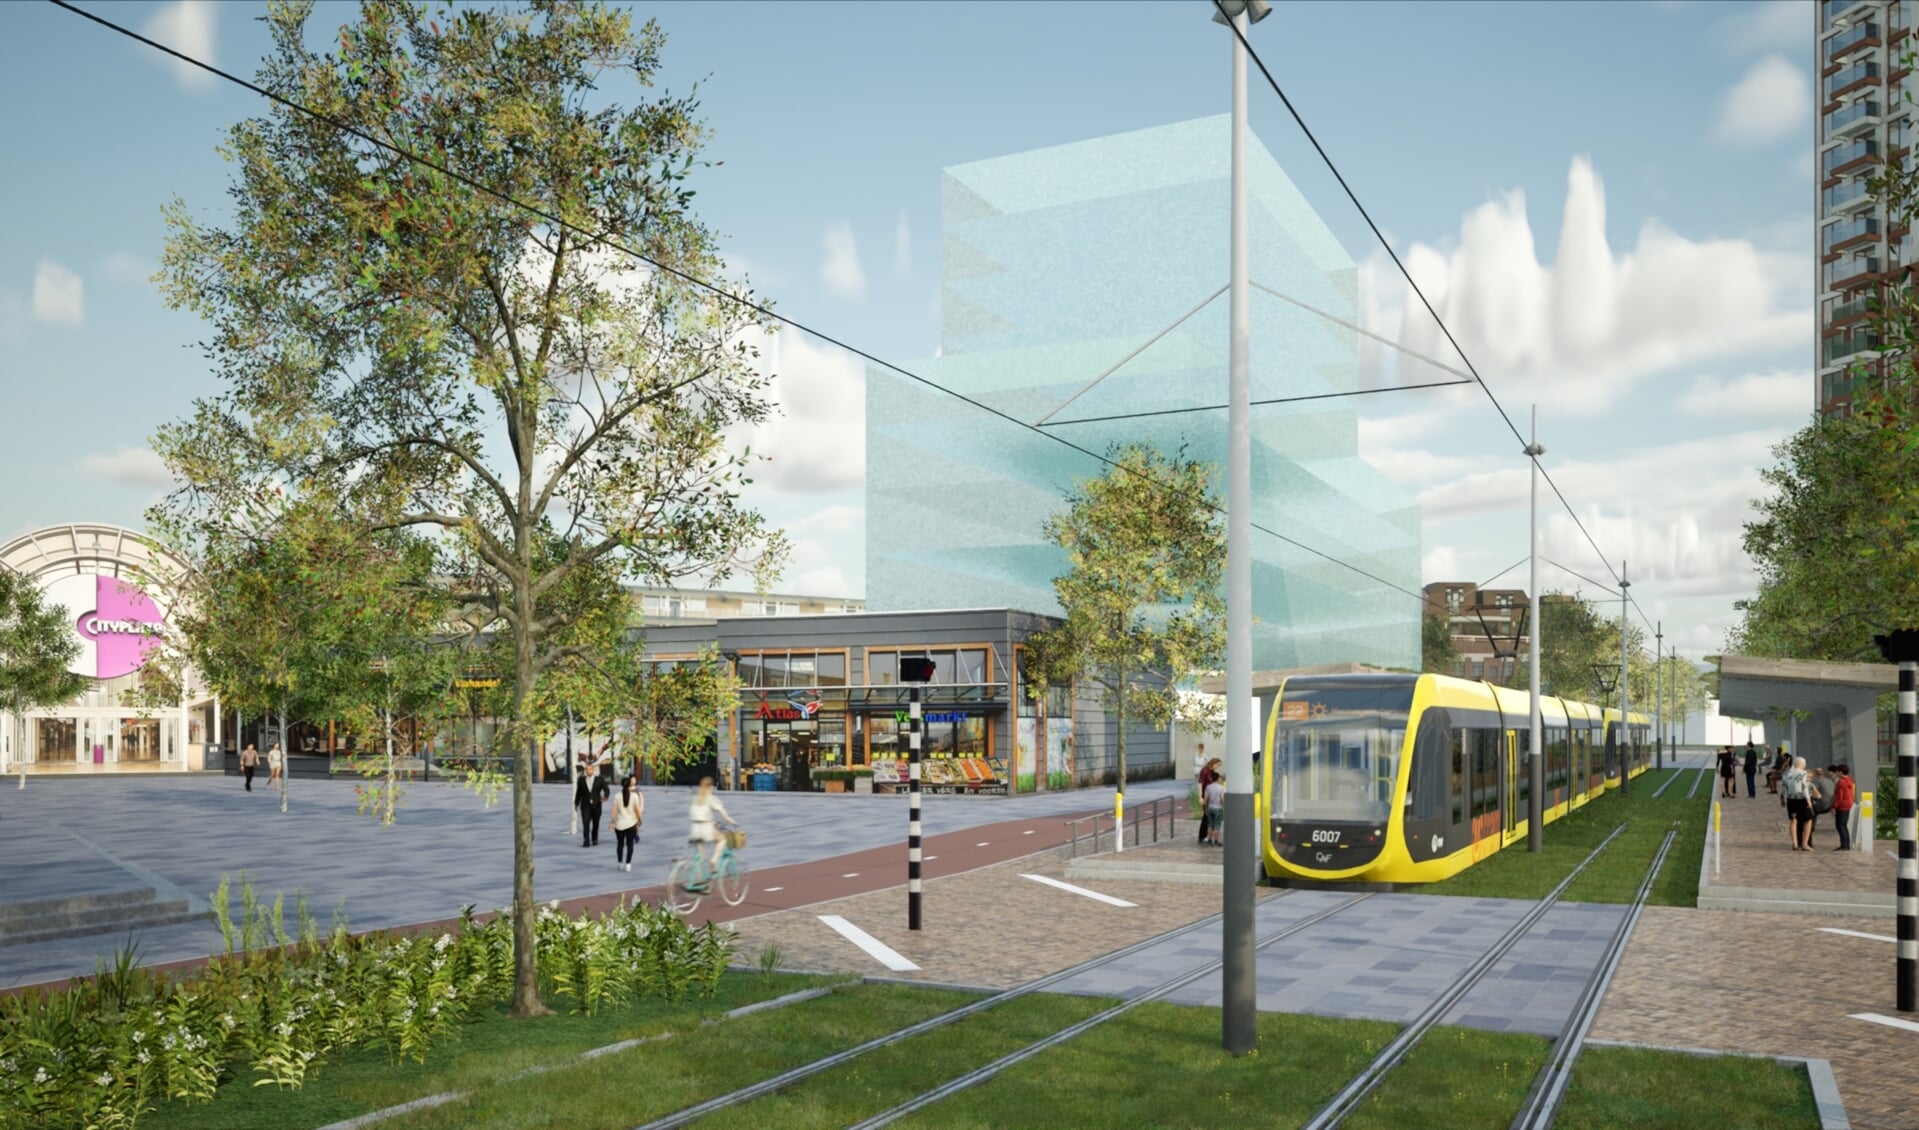 Impressie van de nieuwe tramhalte en trambaan.